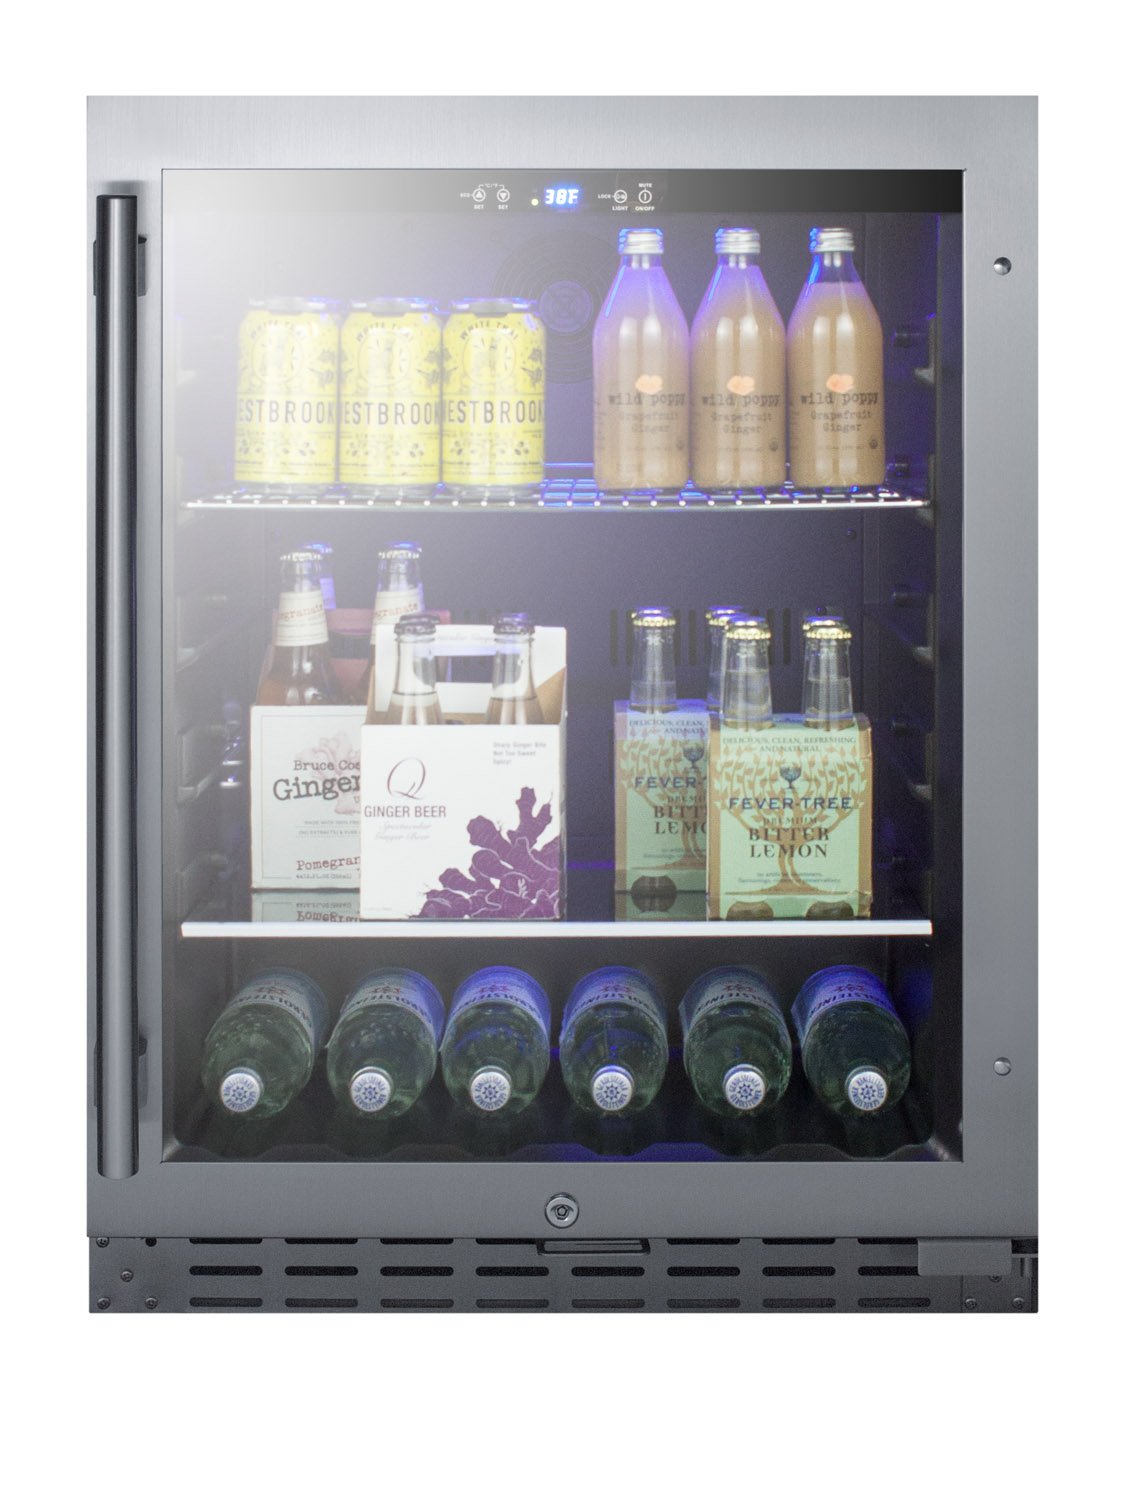 SUMMIT 24 in. ADA-Compliant Built-In Beverage Cooler (ALBV2466)